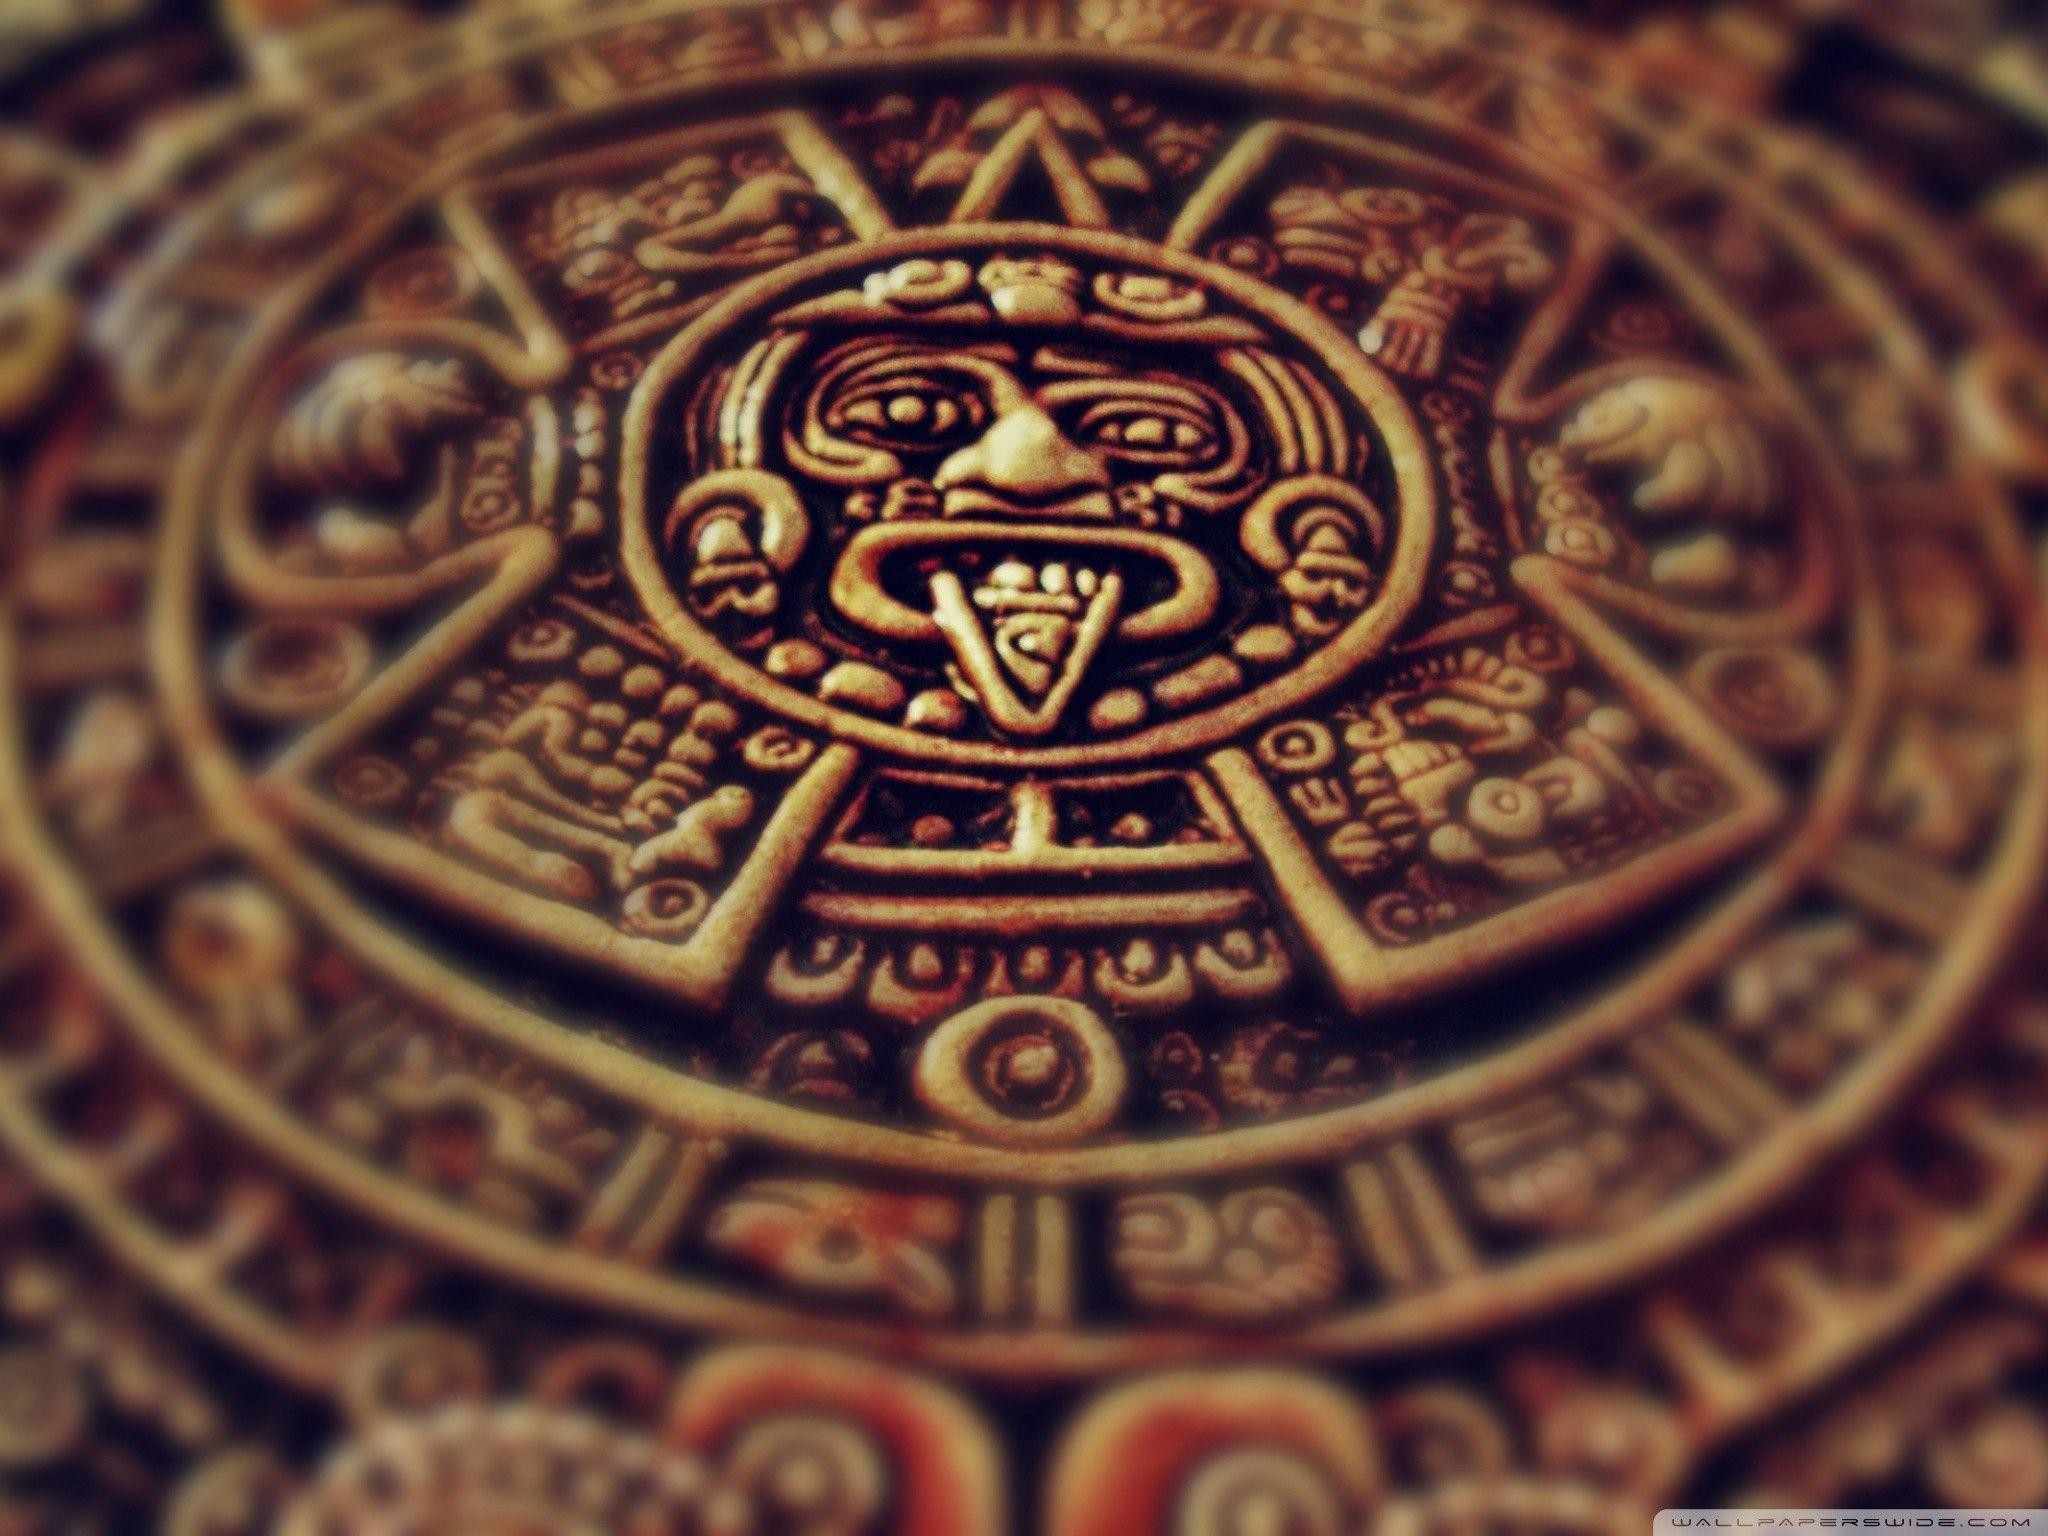 Aztec Calendar Images Customize and Print